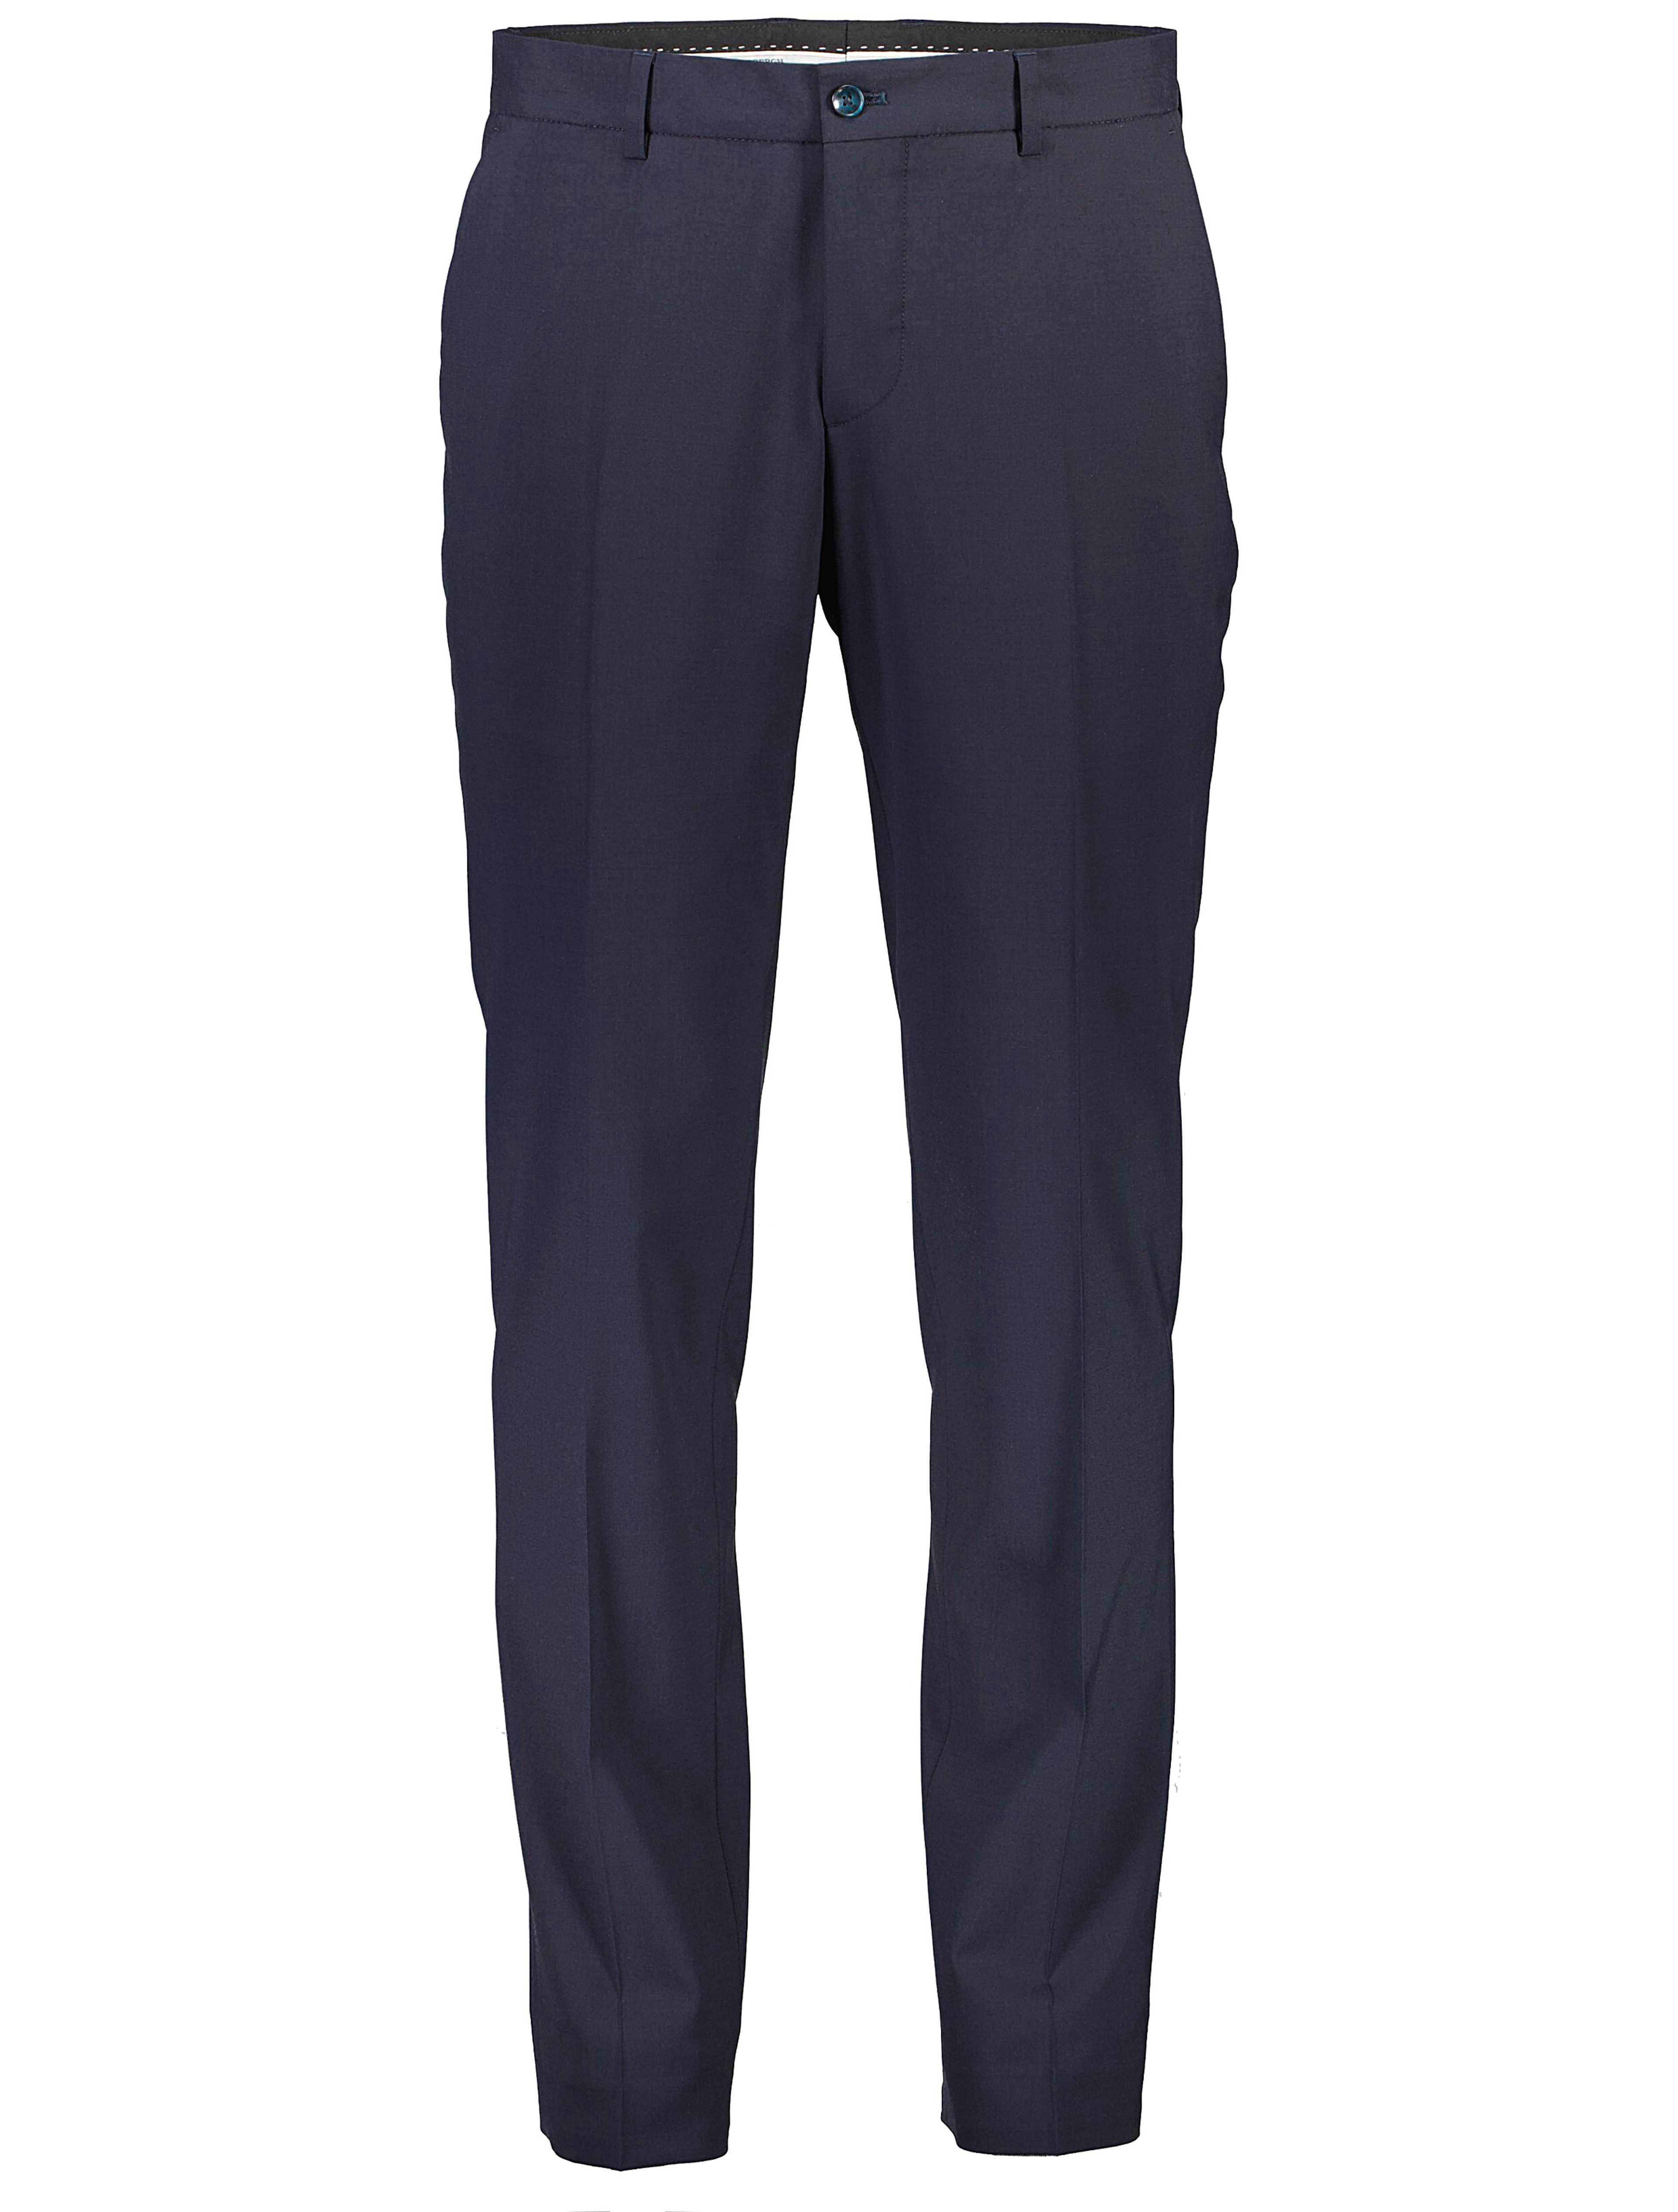 Lindbergh Suit Pants blue / navy